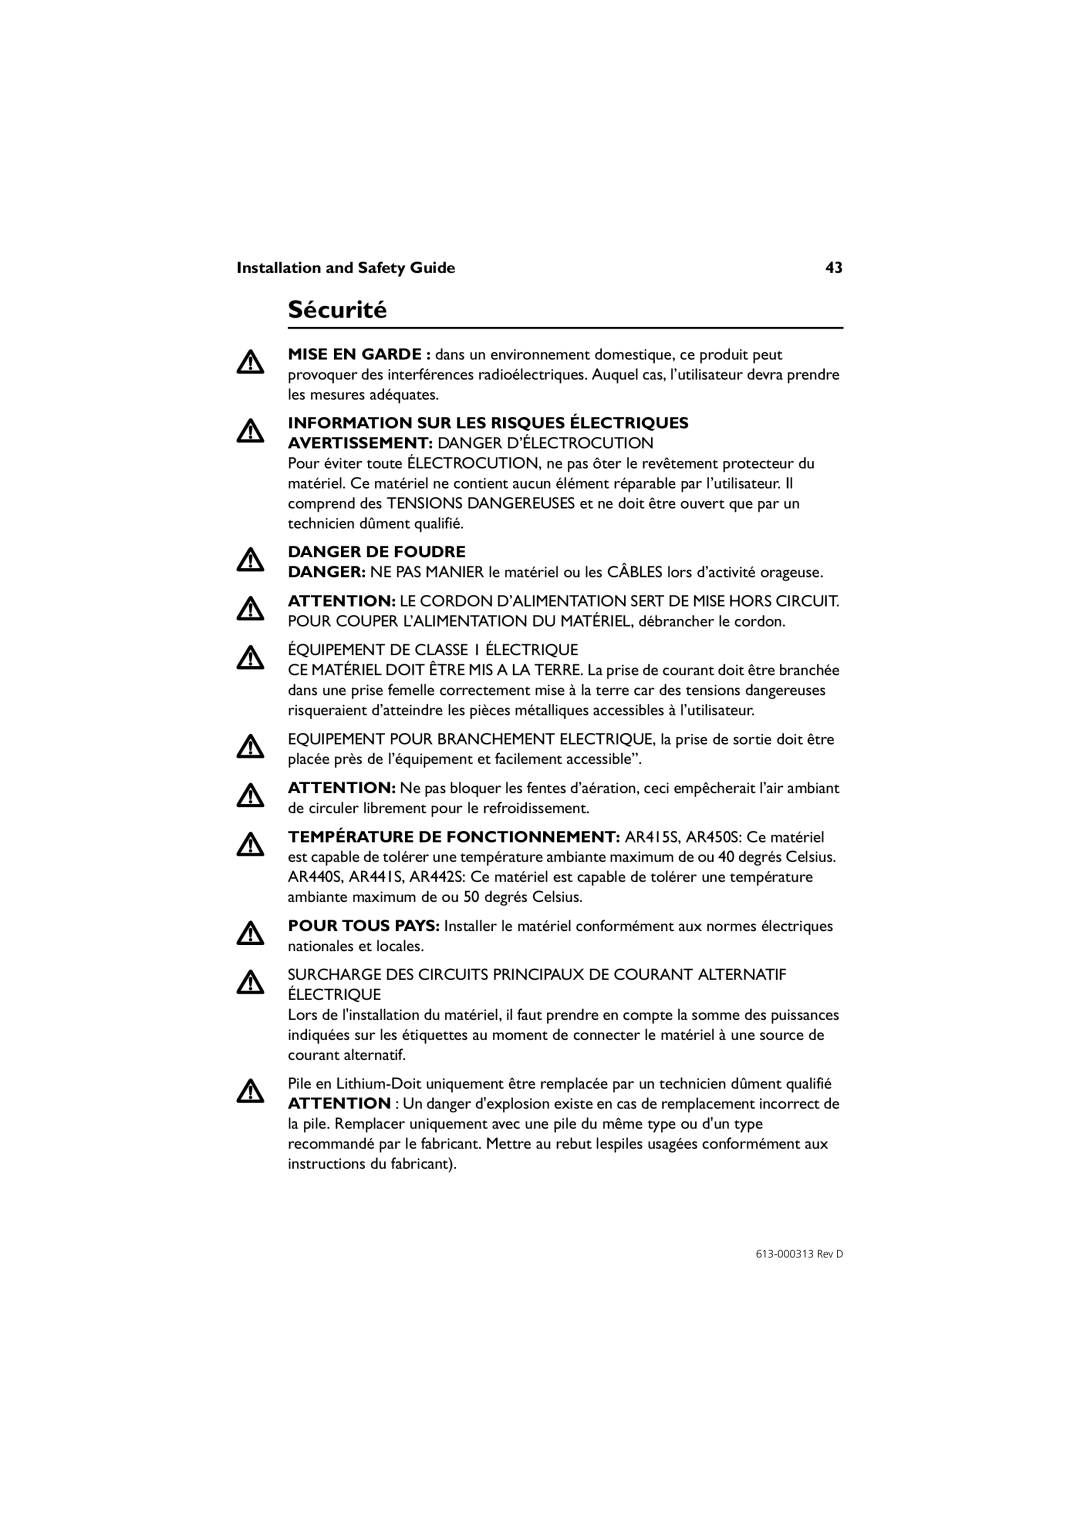 Allied Telesis AR415S Sécurité, Information Sur Les Risques Électriques, Danger De Foudre, Installation and Safety Guide 